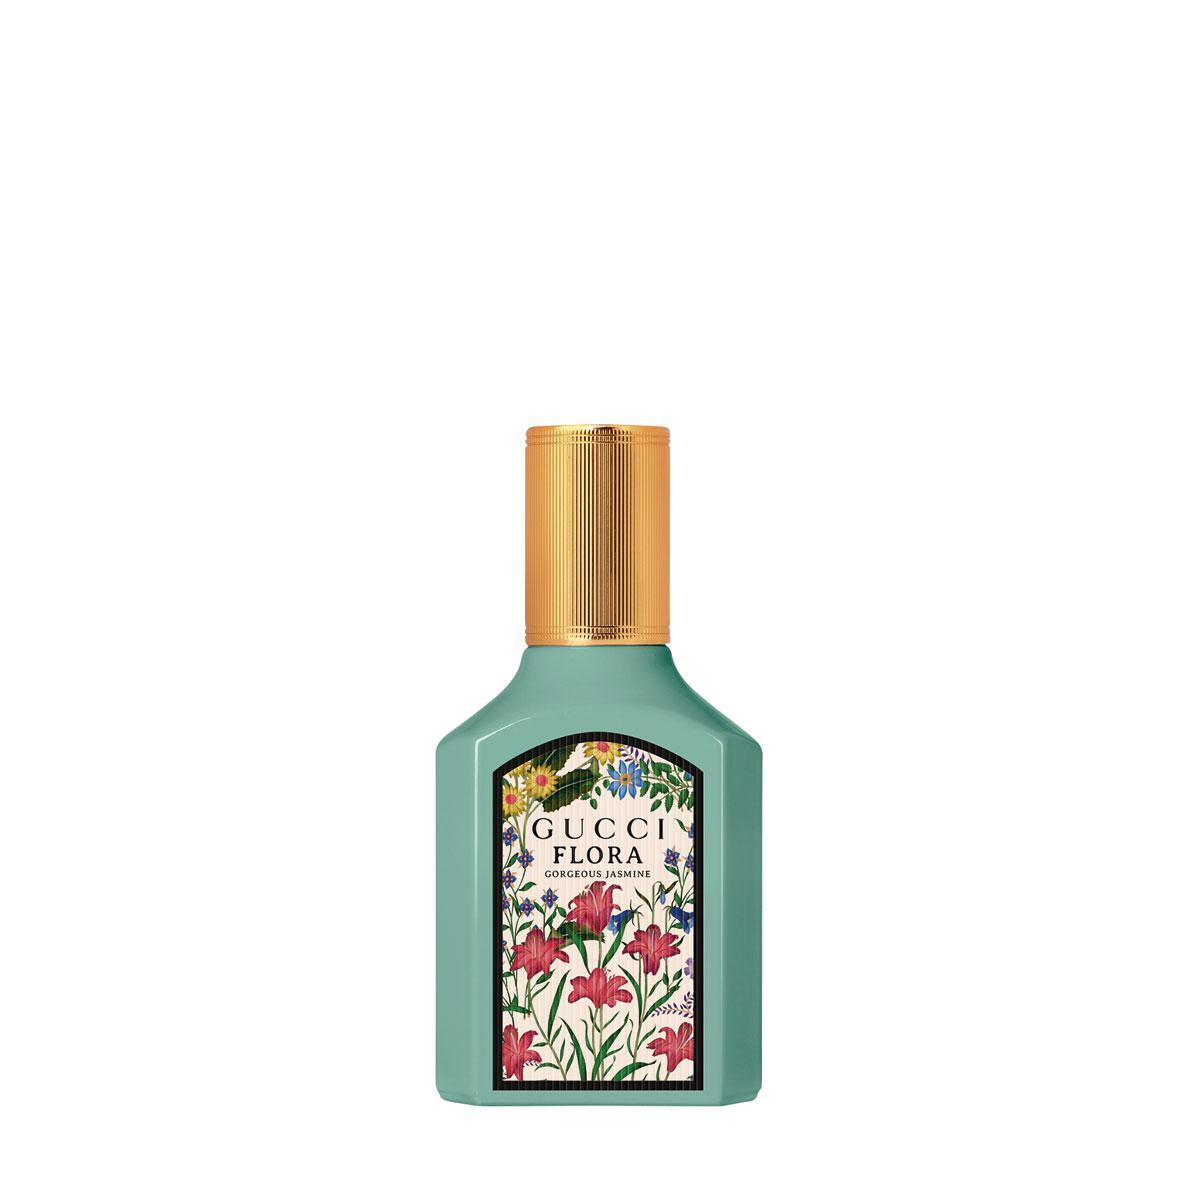 Eau de parfum Gucci Flora Gorgeous Jasmine, 69 euro voor 30 ml, gucci.com